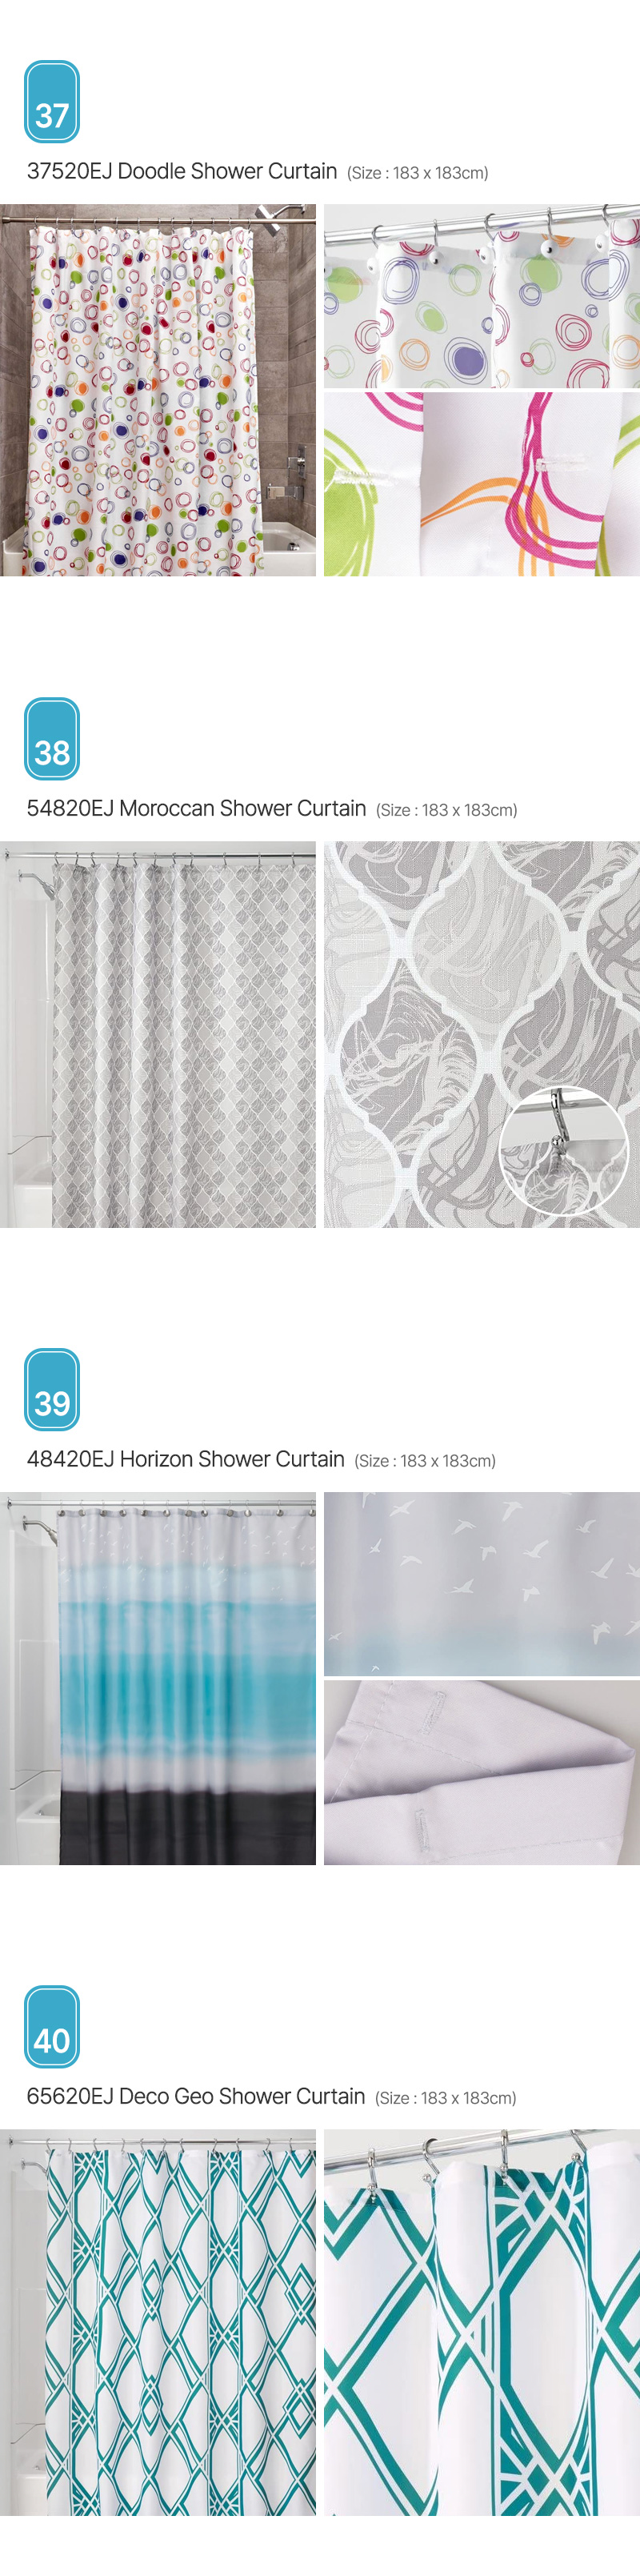 Aria_Shower-Curtain_10.jpg